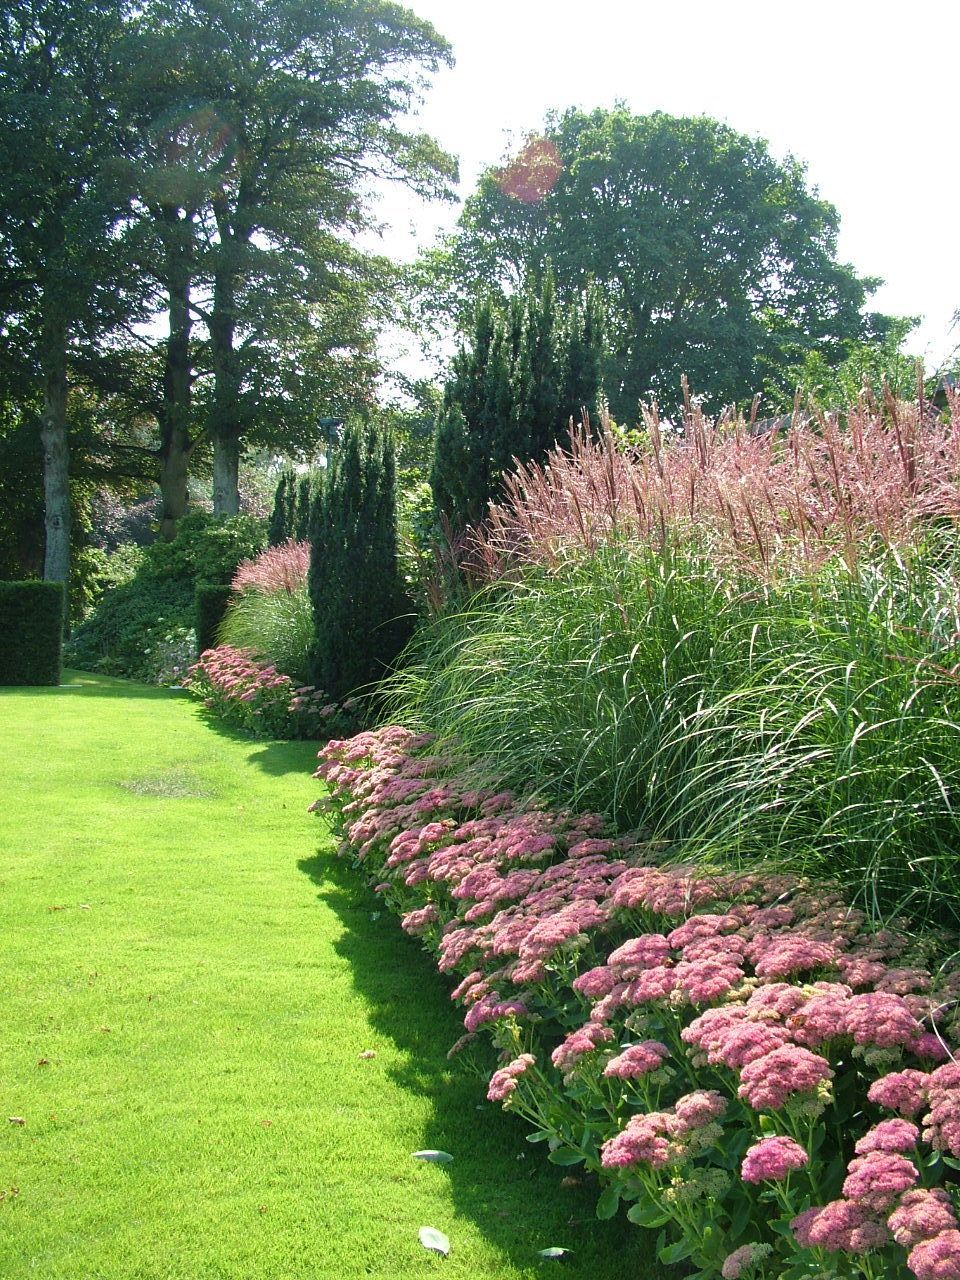 Inspiring Garden Landscape Designs for a
Beautiful Backyard